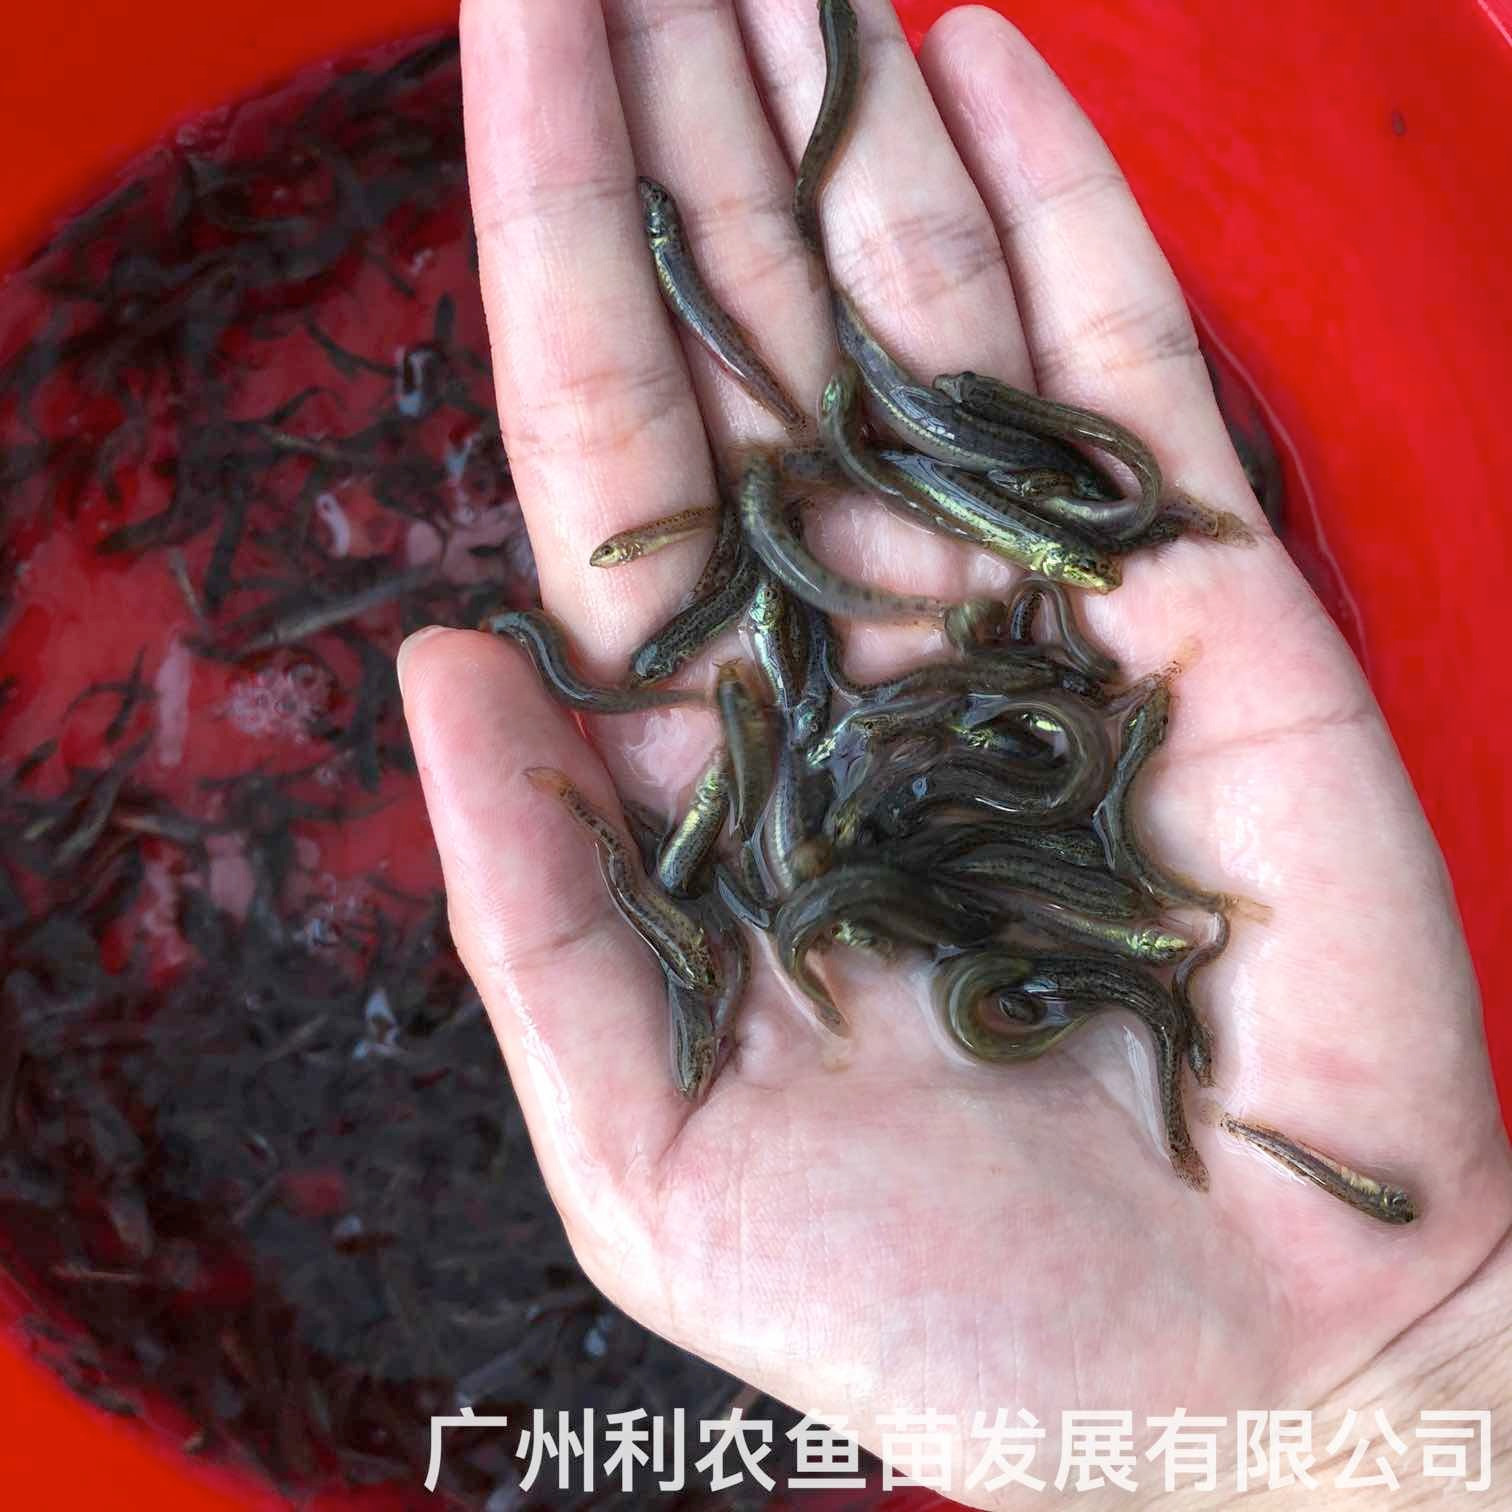 天津台湾泥鳅苗出售北京泥鳅鱼苗批发